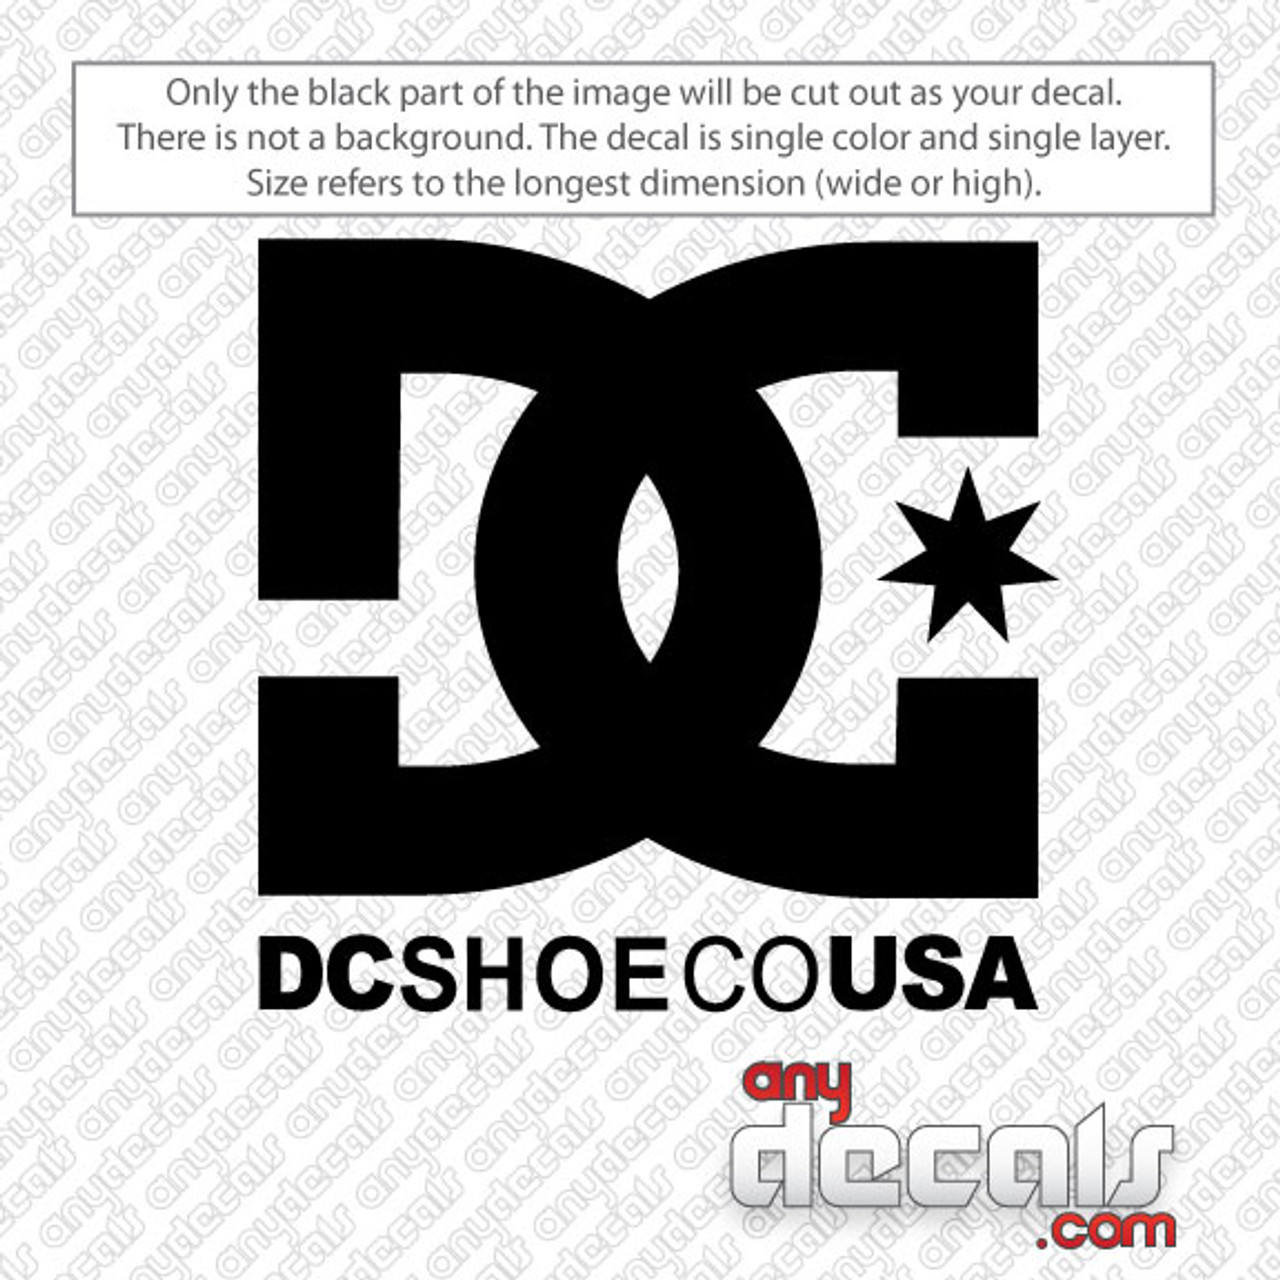 DC Shoe Co USA Car Decal